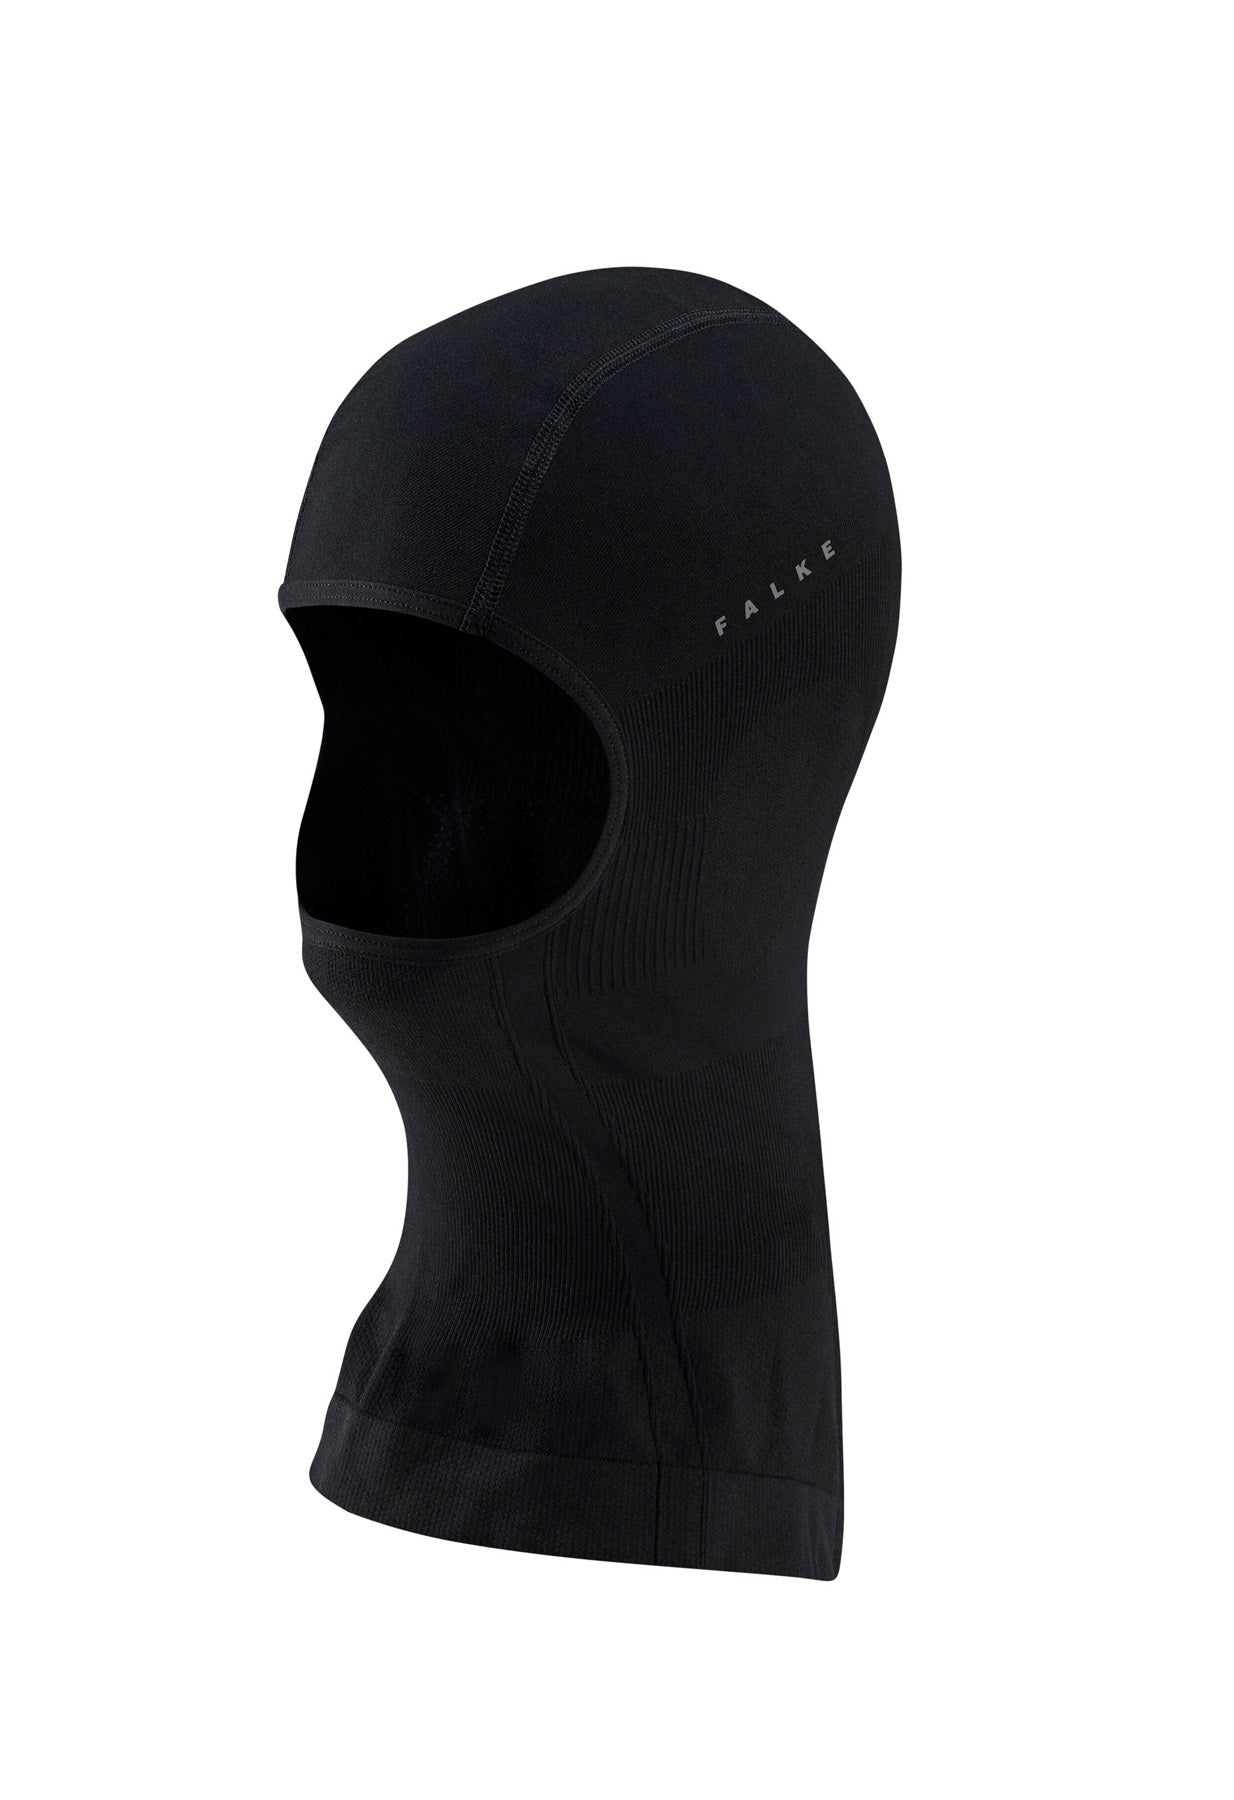 Falke Black Ski Face Mask